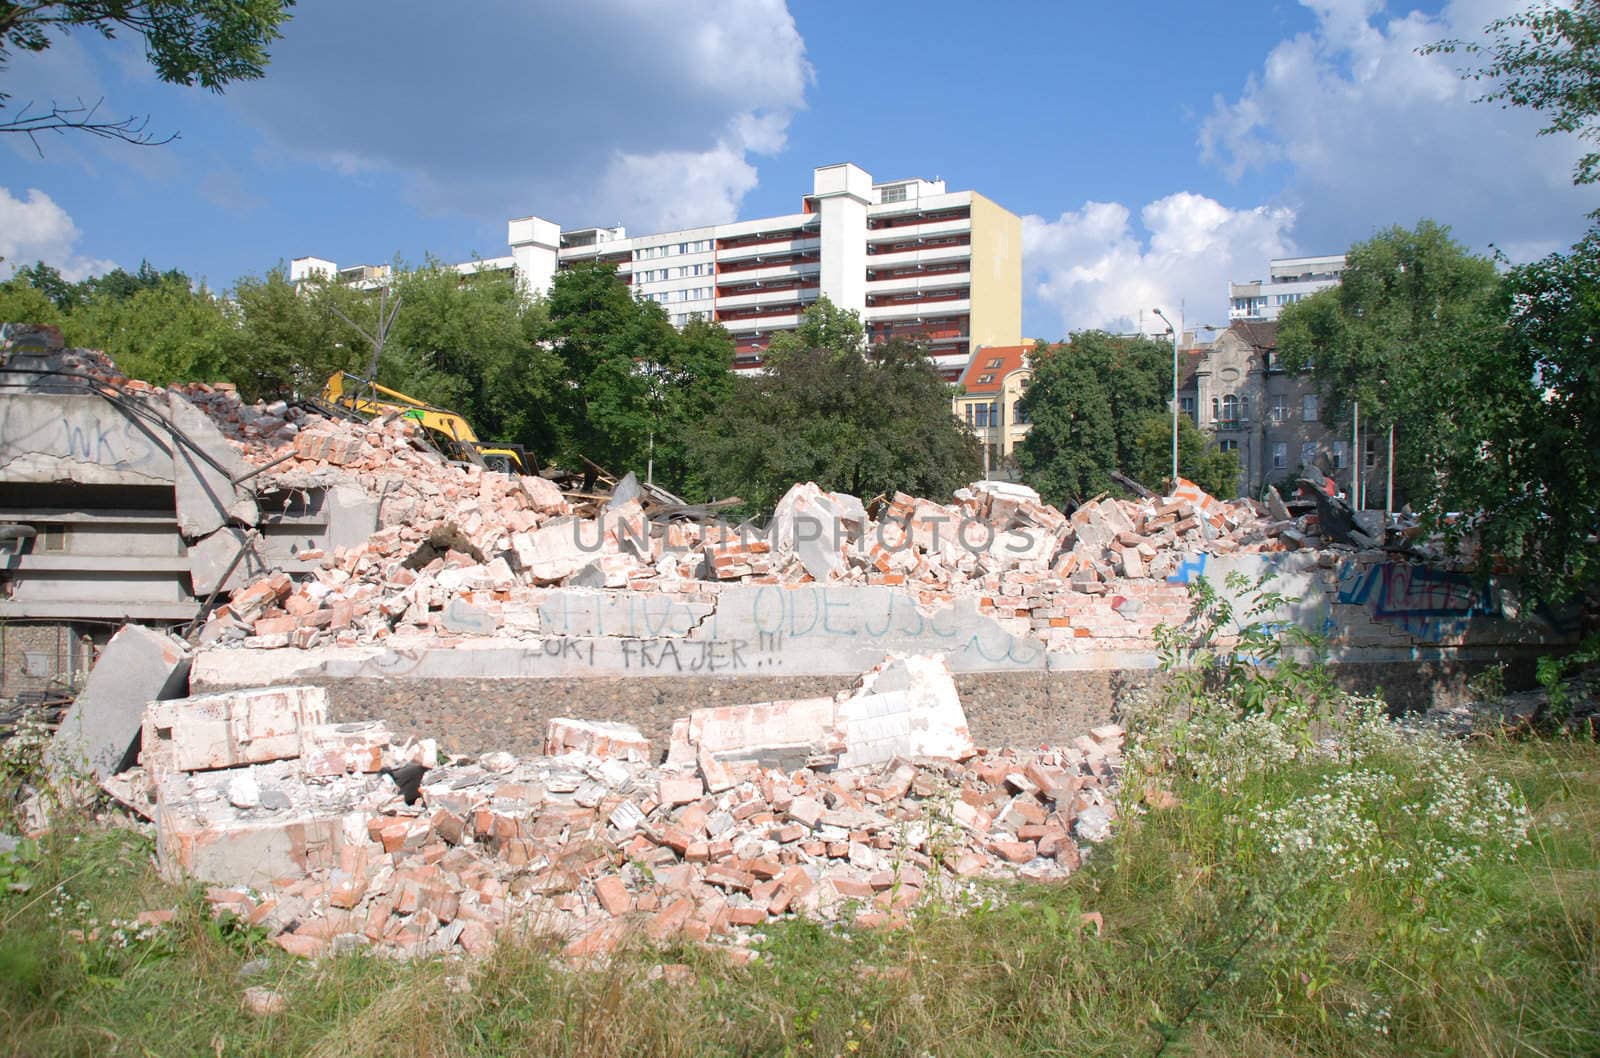 Demolition Store Rondo in Wroclaw. Poland by wojciechkozlowski